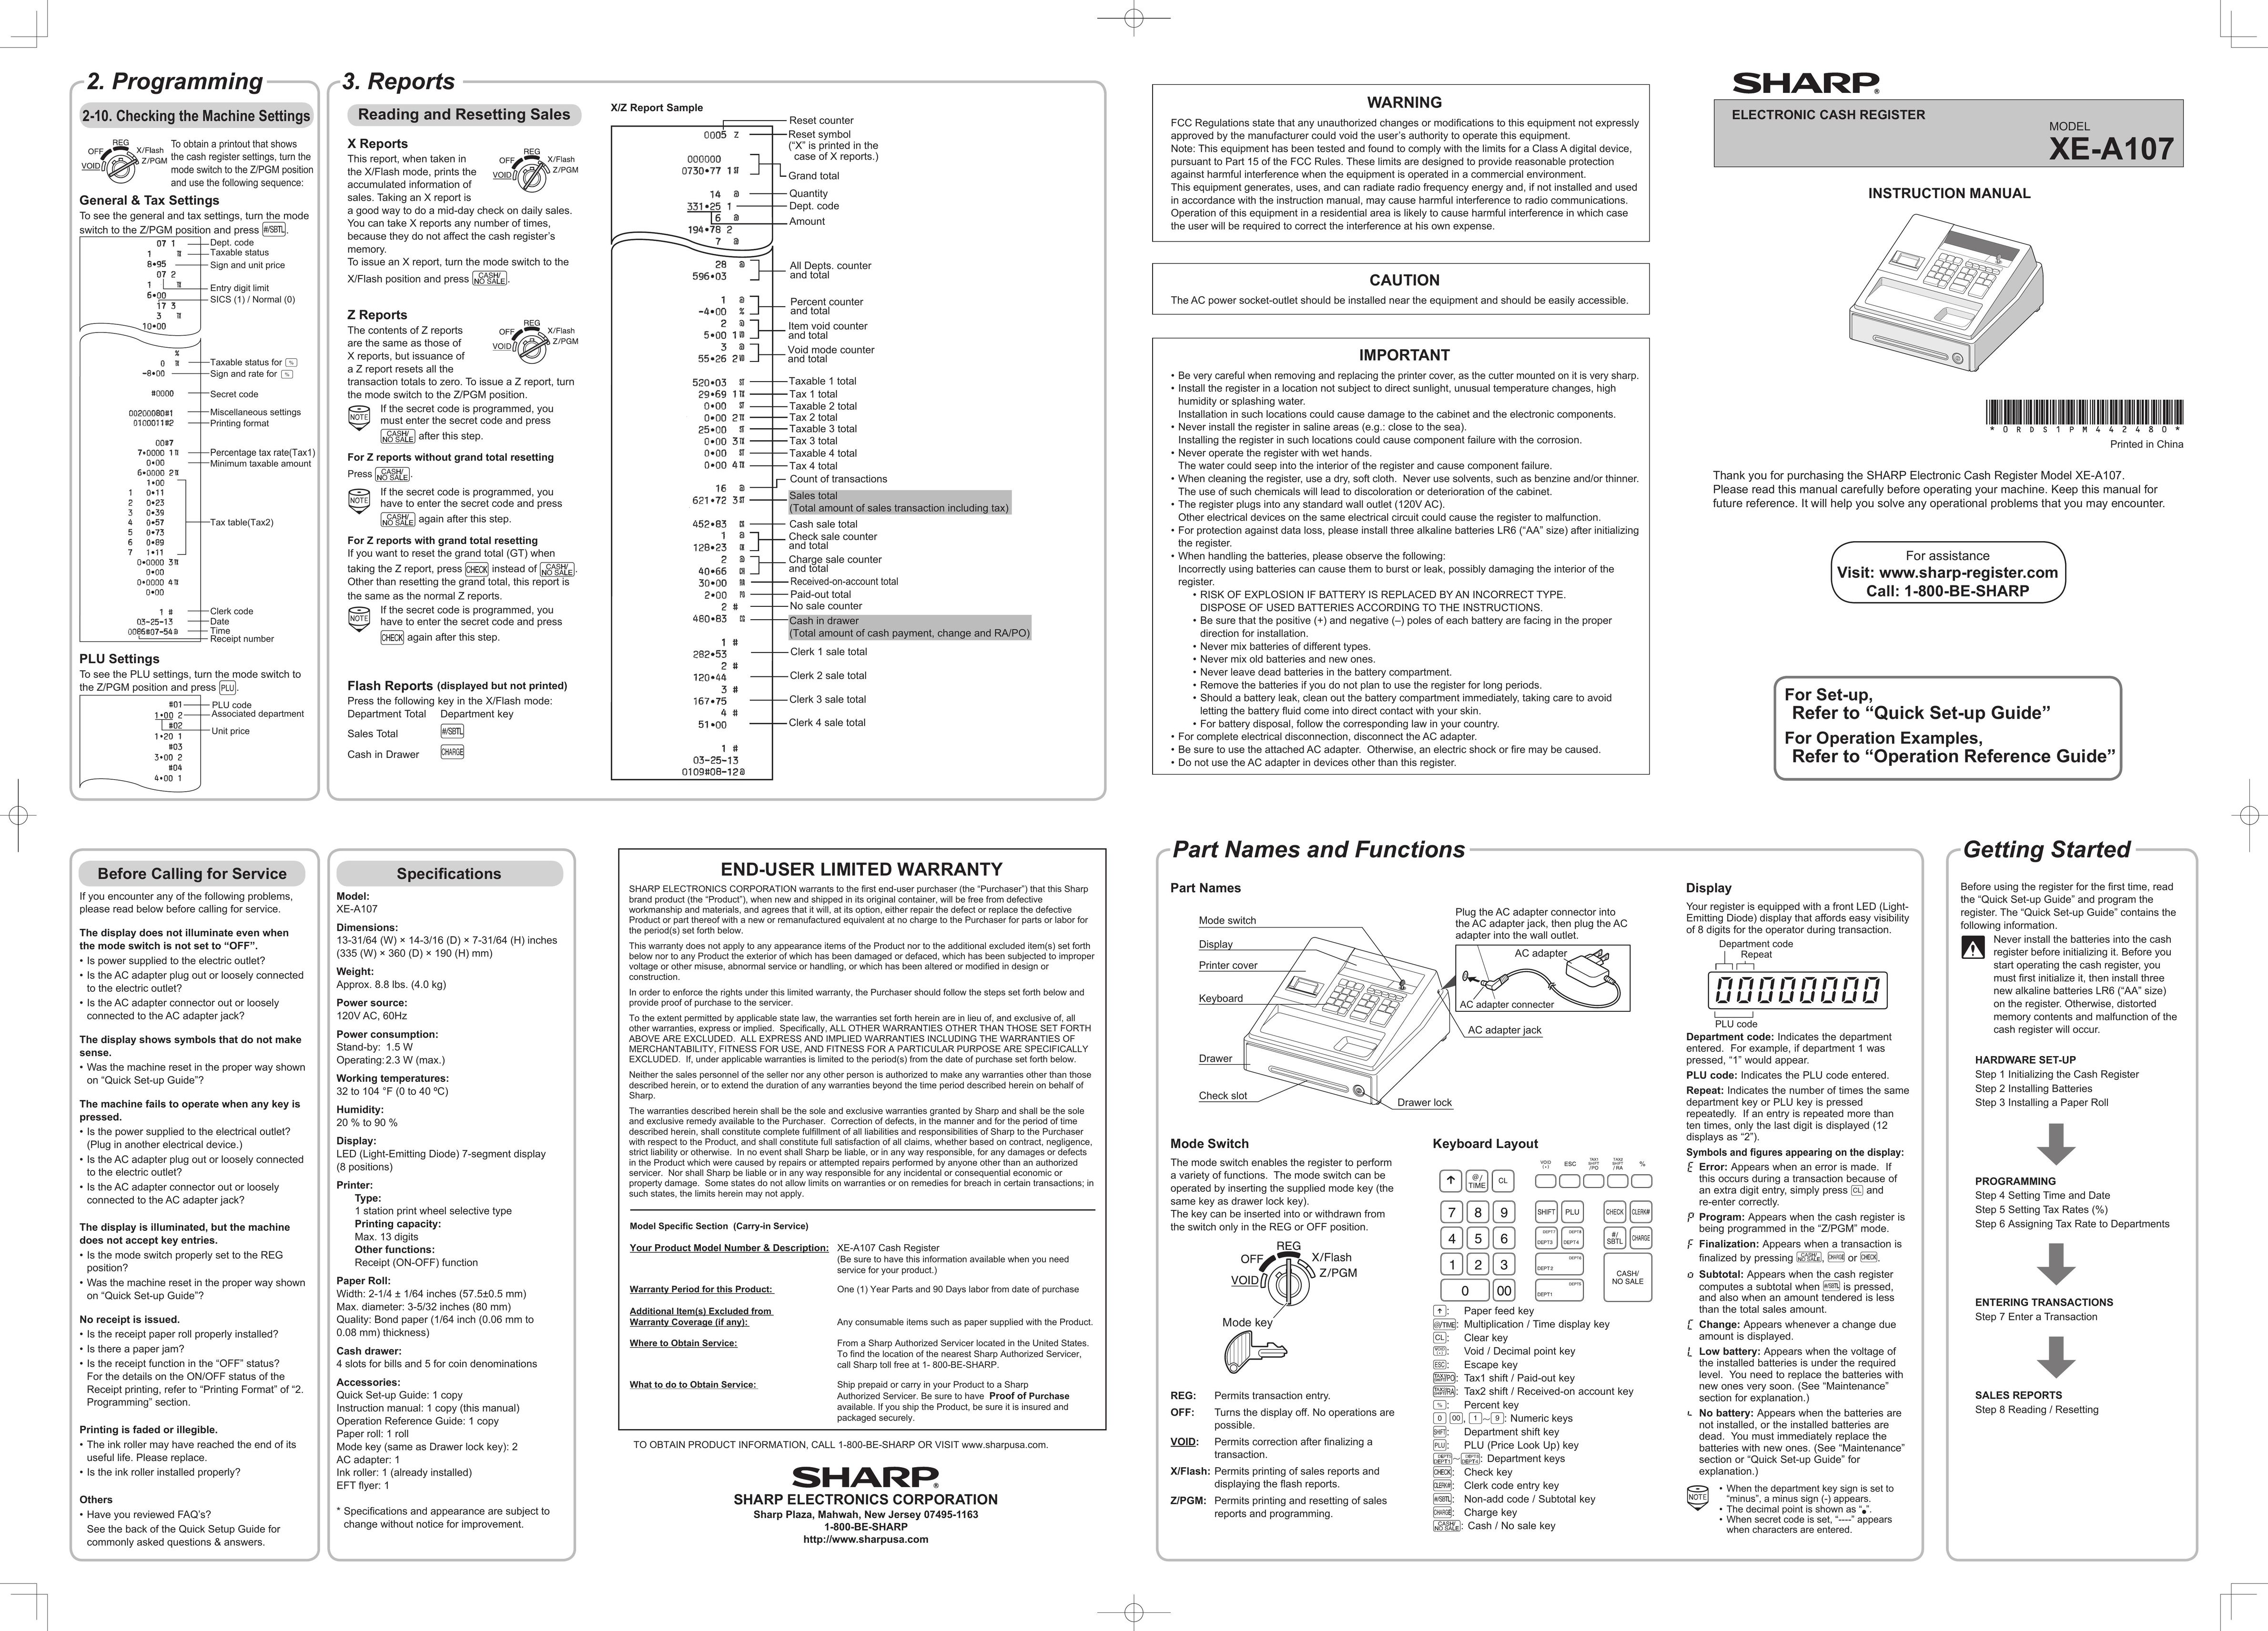 Sharp XE-A107 Cash Register User Manual